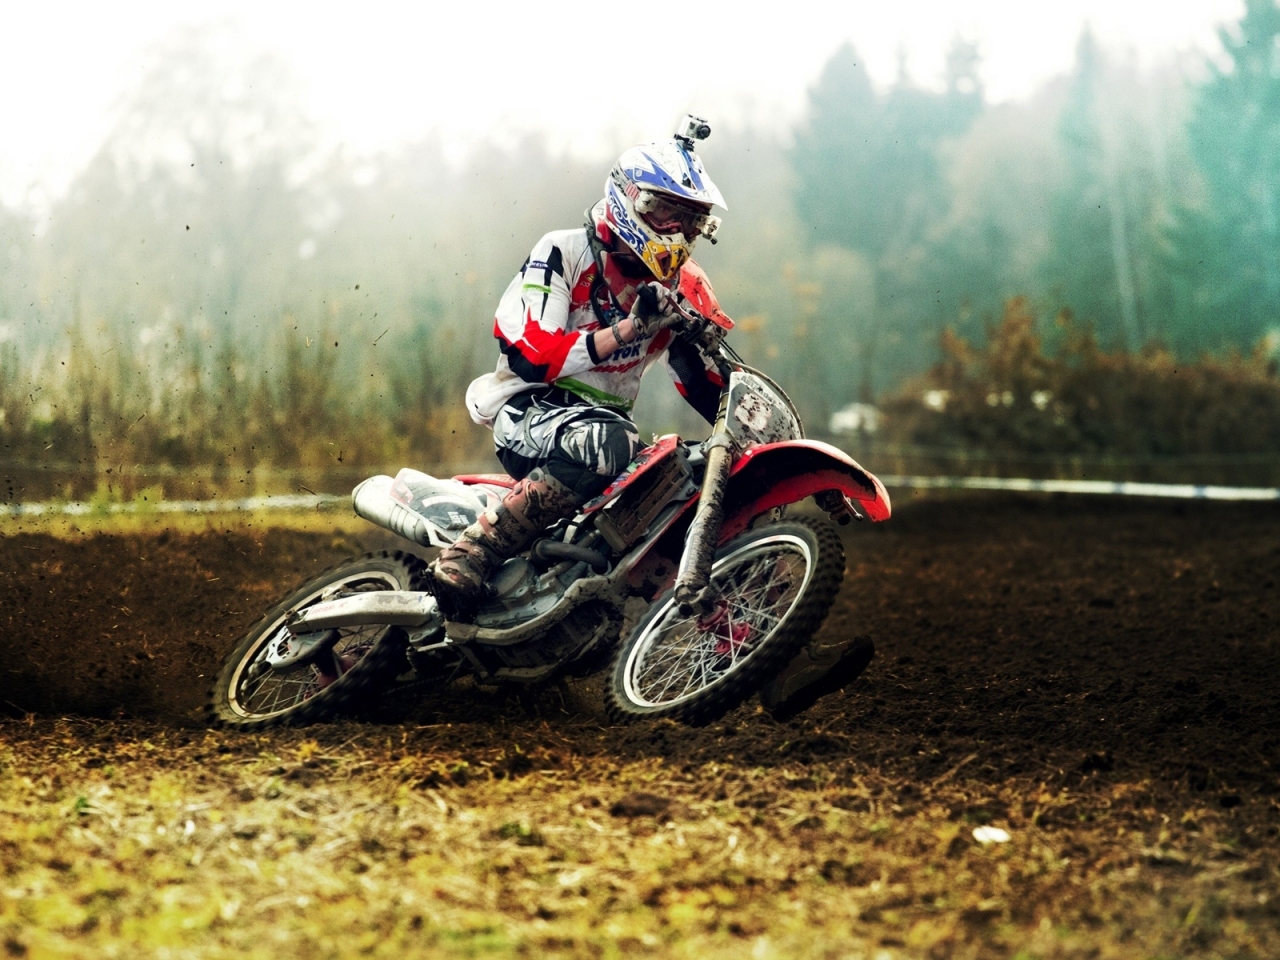 Motocross for 1280 x 960 resolution